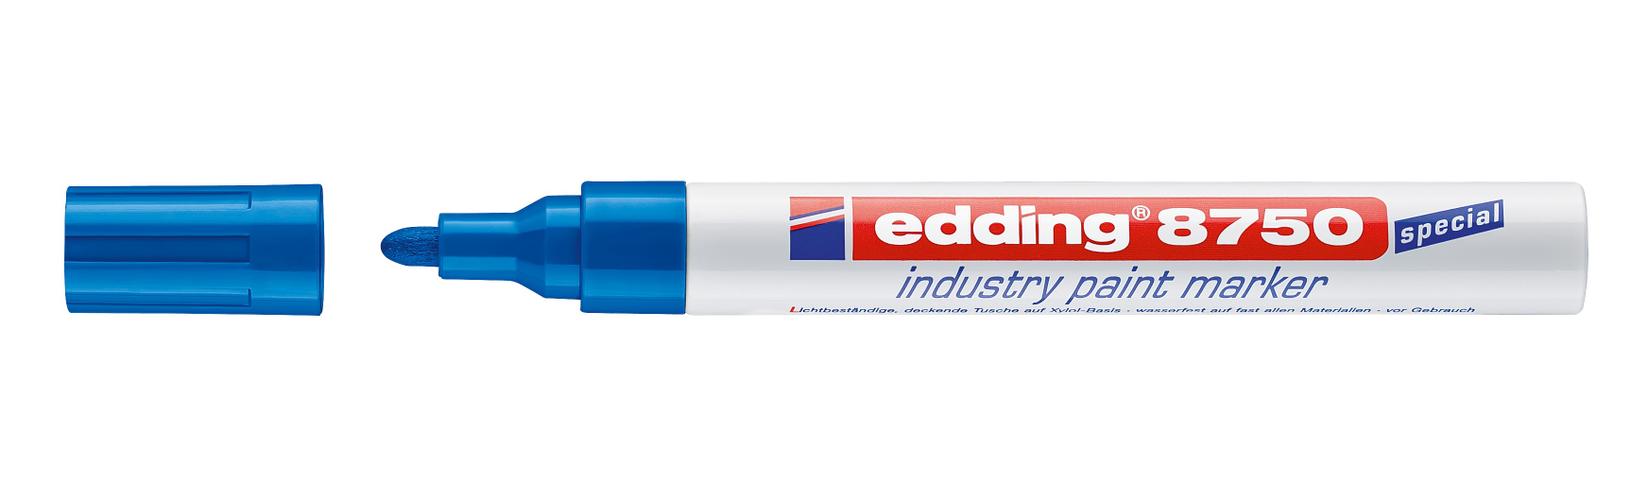 EDDING Industrijski paint marker E-8750 2-4mm plavi